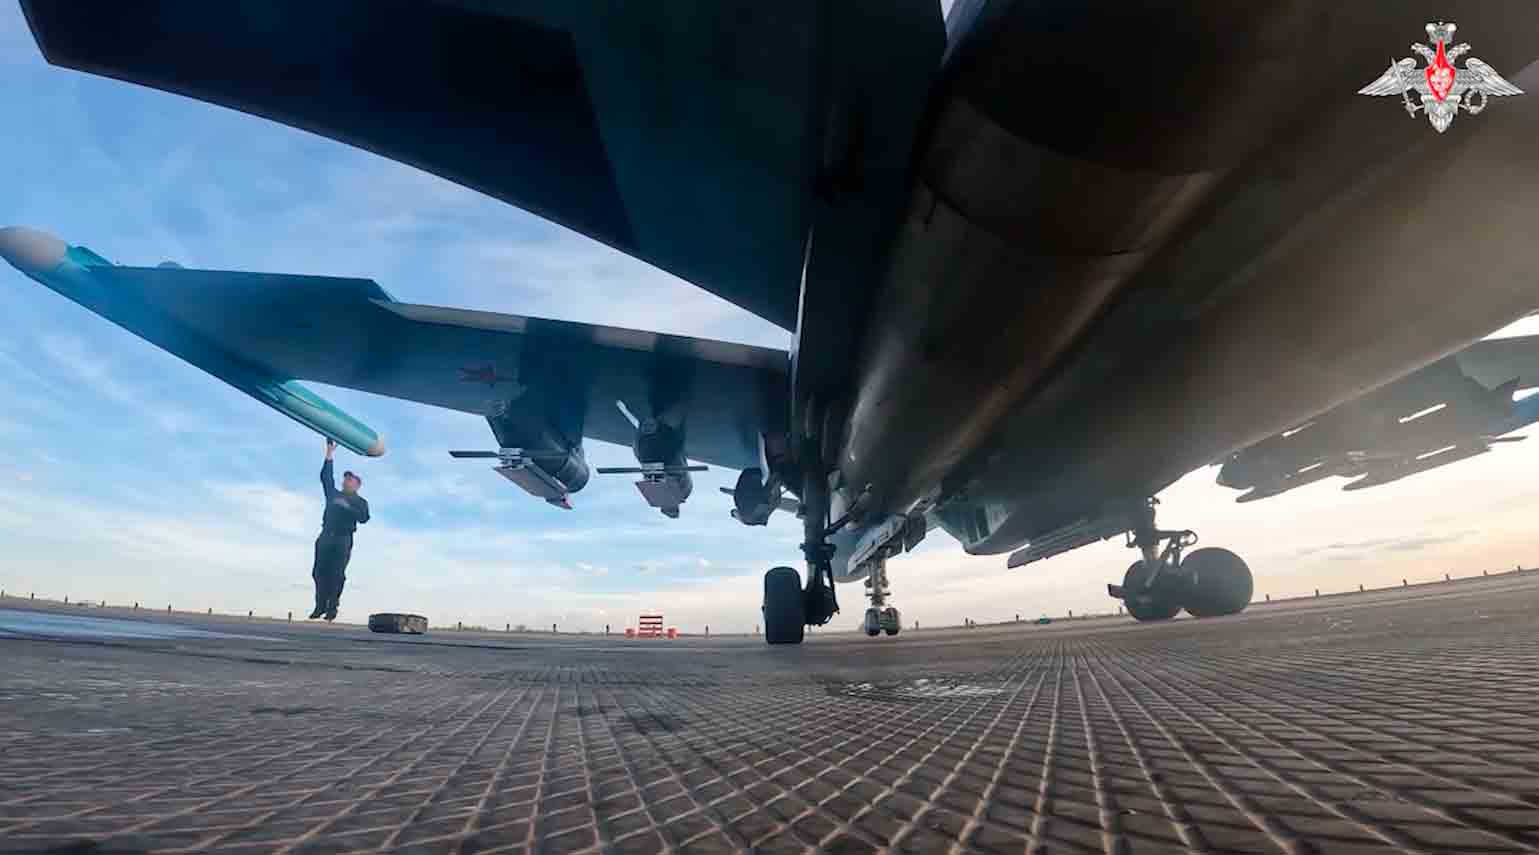 vídeo: su-34 russo destrói posições ucranianas com novas bombas termobáricas odab-500 guiadas